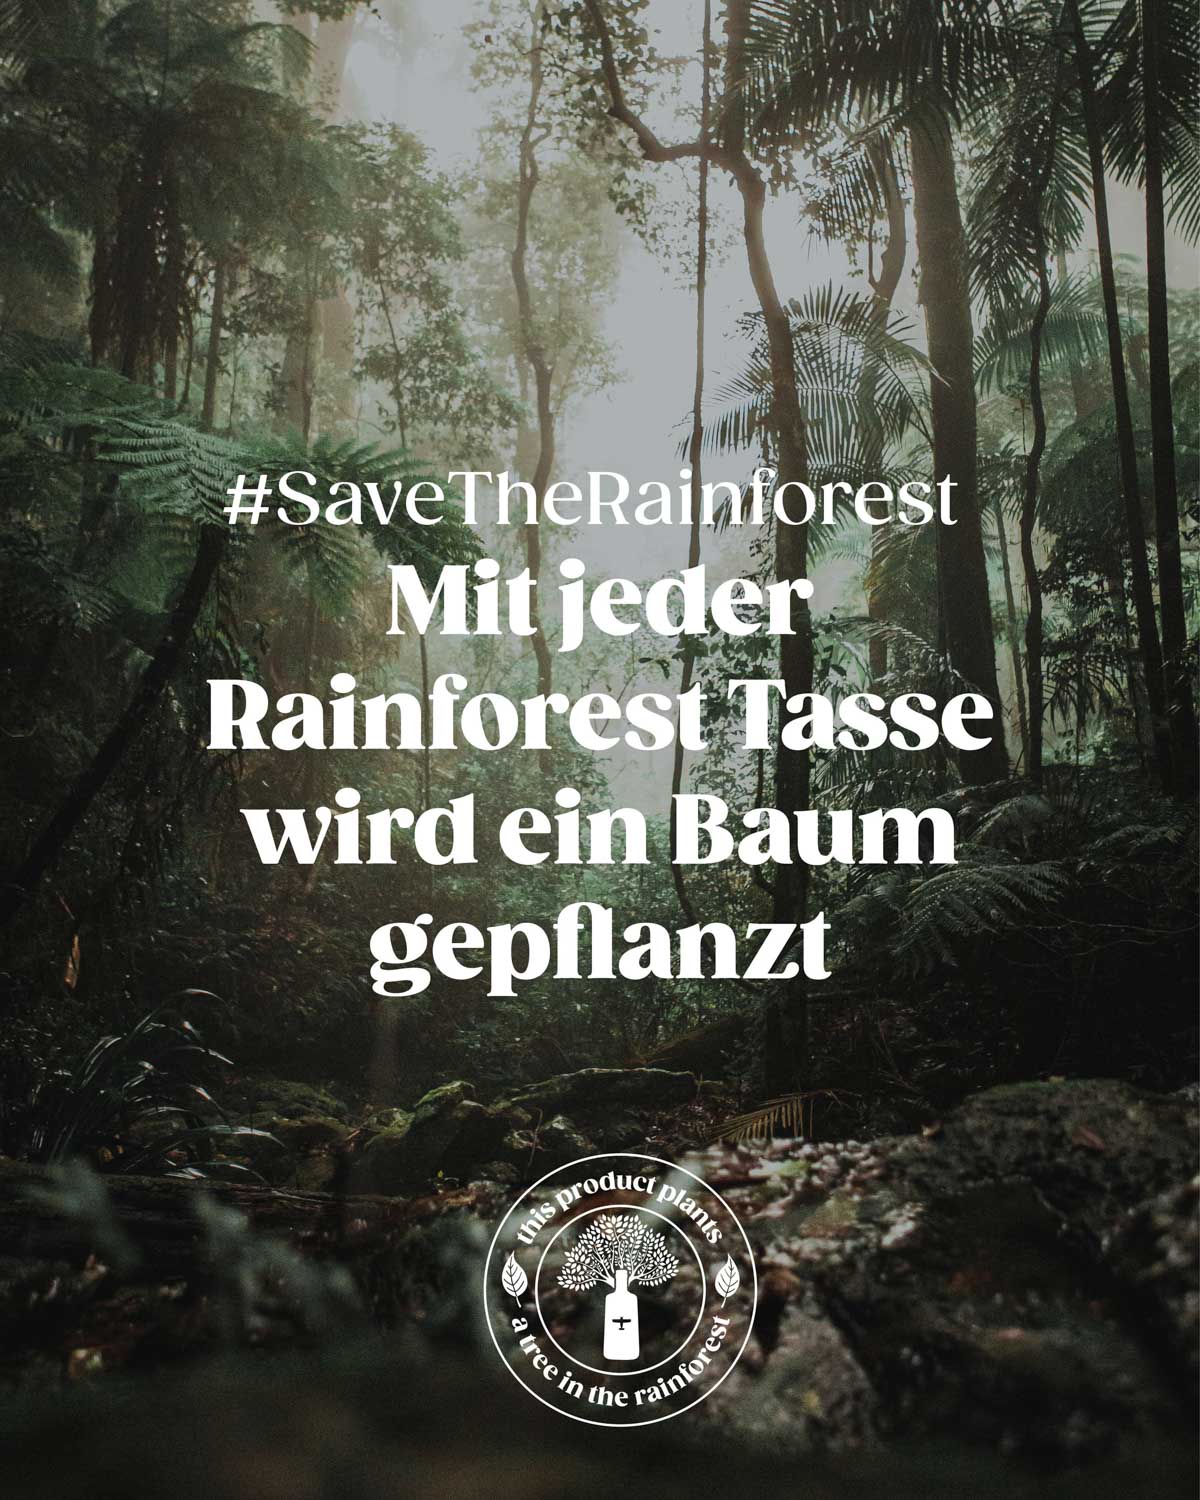 Im Hintergrund befindet sich der wunderschöne Regenwald. Im Vordergrund steht unsere Mission : #SaveTheRainforest und "Mit jeder Rainforest Tasse wird ein Baum gepflanzt".  